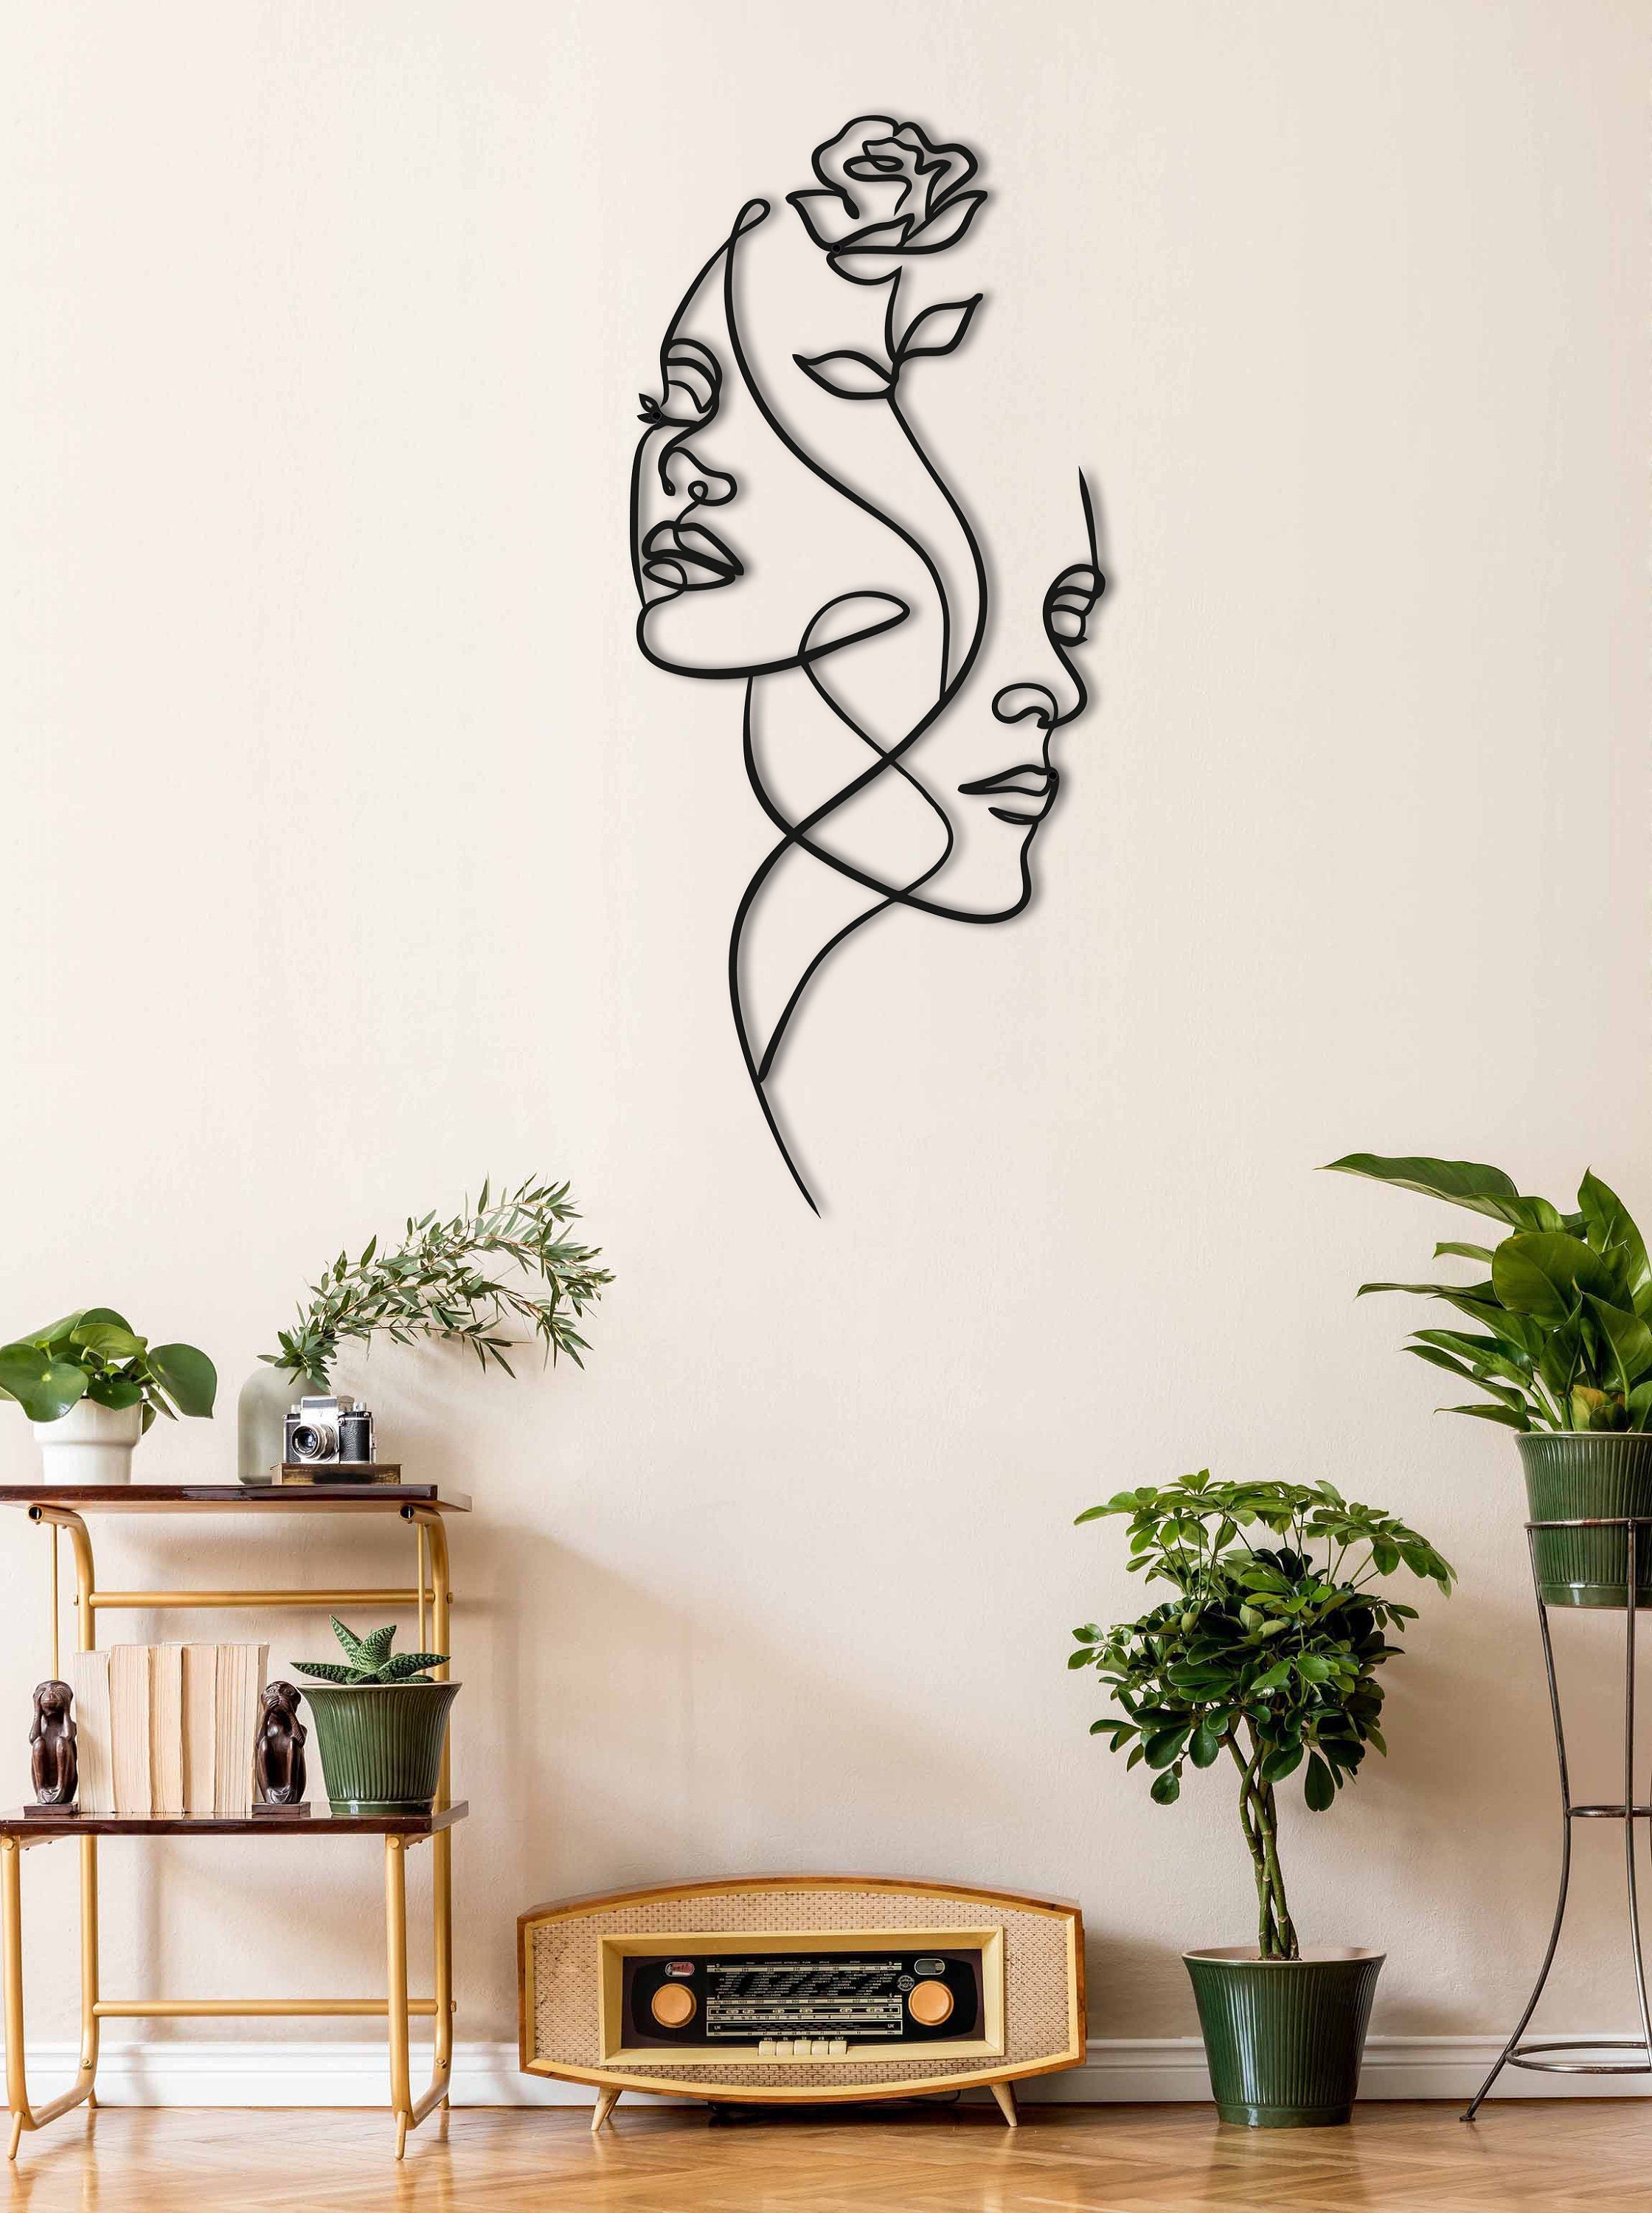 Minimalist Flowers Decor, Minimalist Woman Face Art, Metal Living Room Wall Art, Oversized Room Wall Decor, Metal Wall Decor